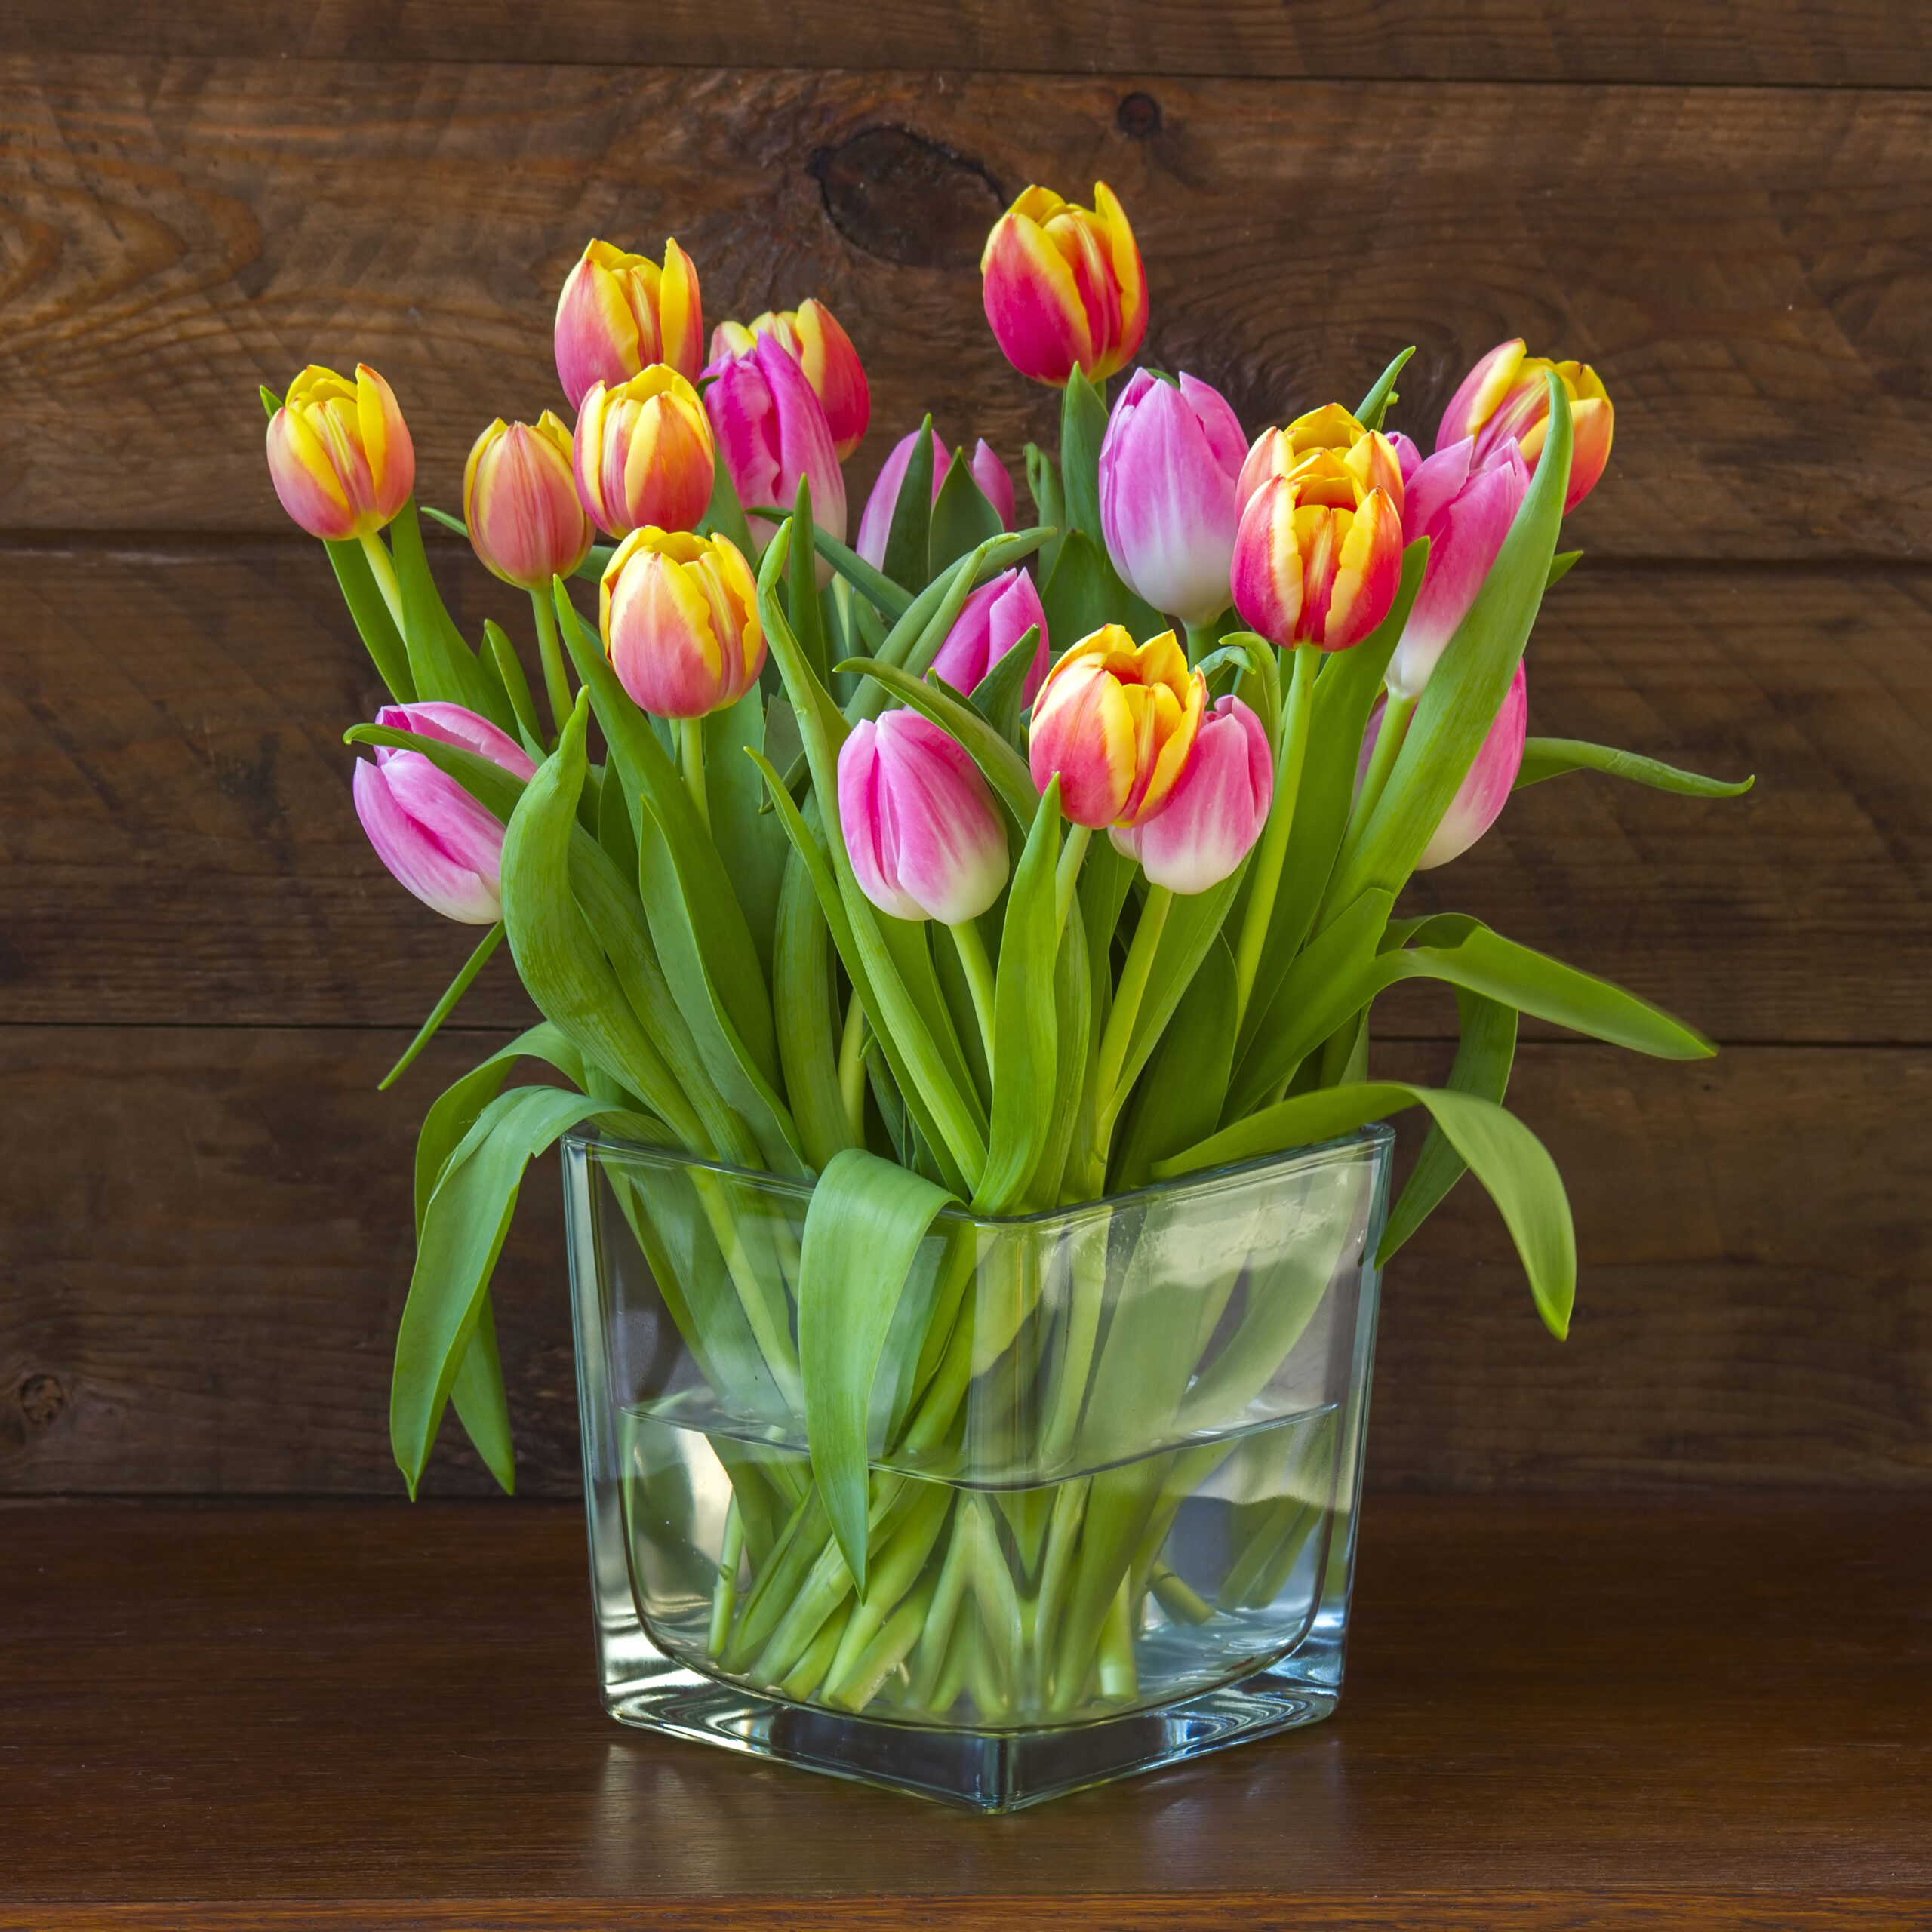 Így marad sokáig gyönyörű a tulipán a vázában